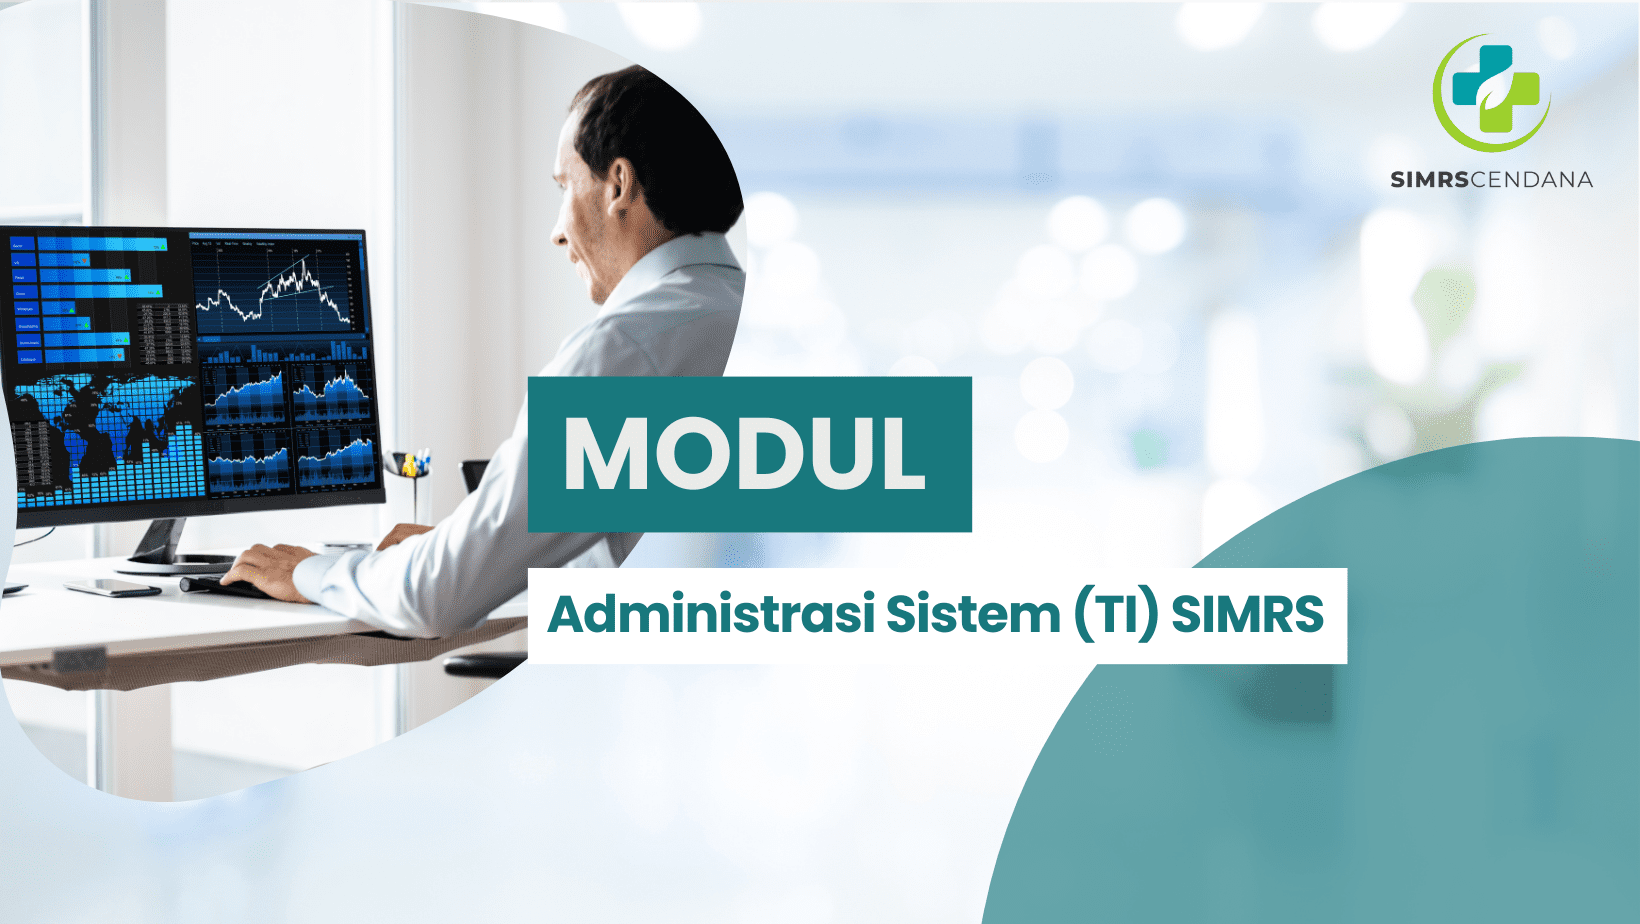 Modul Administrasi Sistem (TI) SIMRS